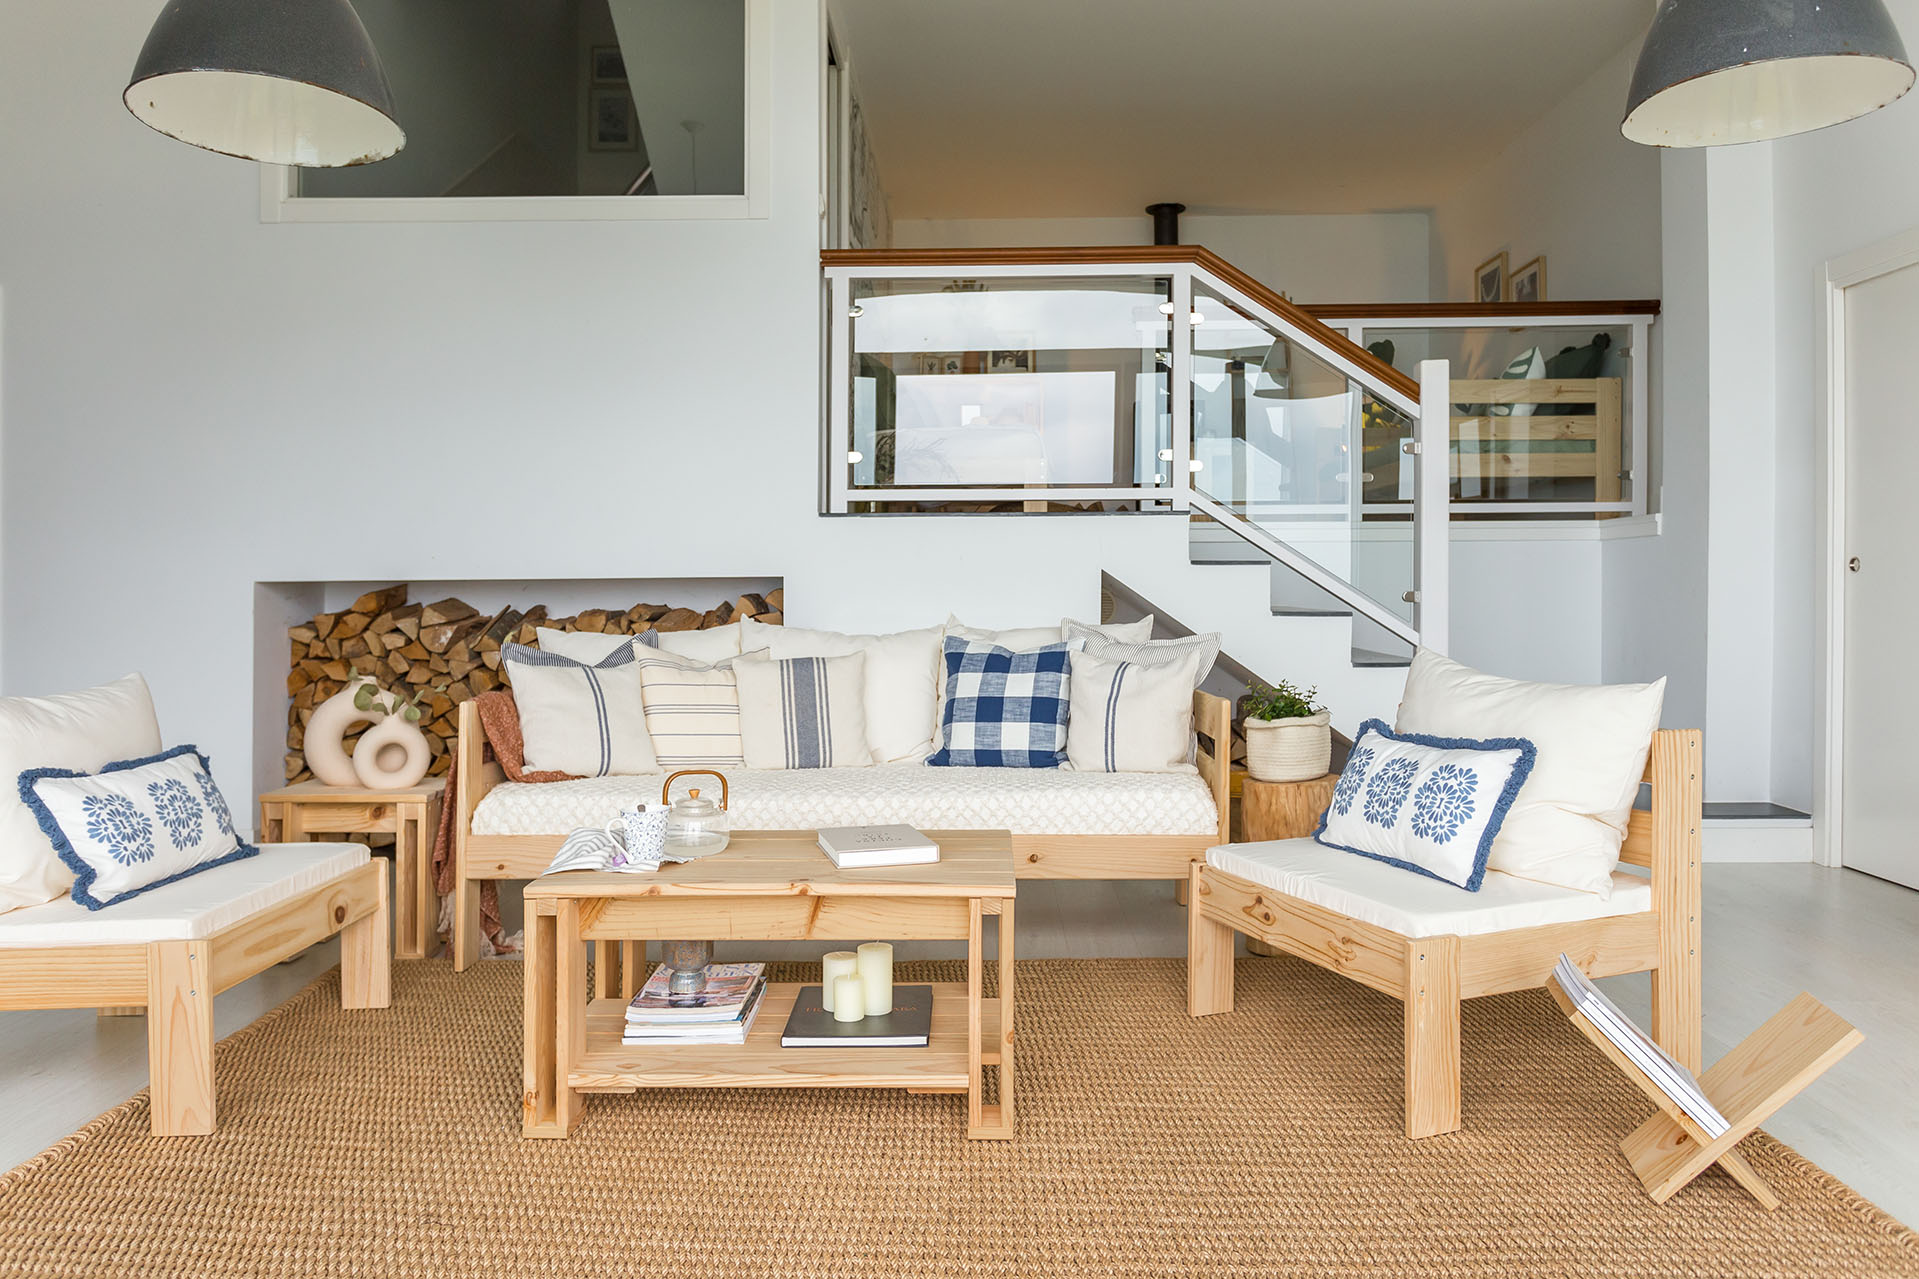 Nuevos sillones OREKA: crea espacio de relax a medida tu salón o jardín | Muebles